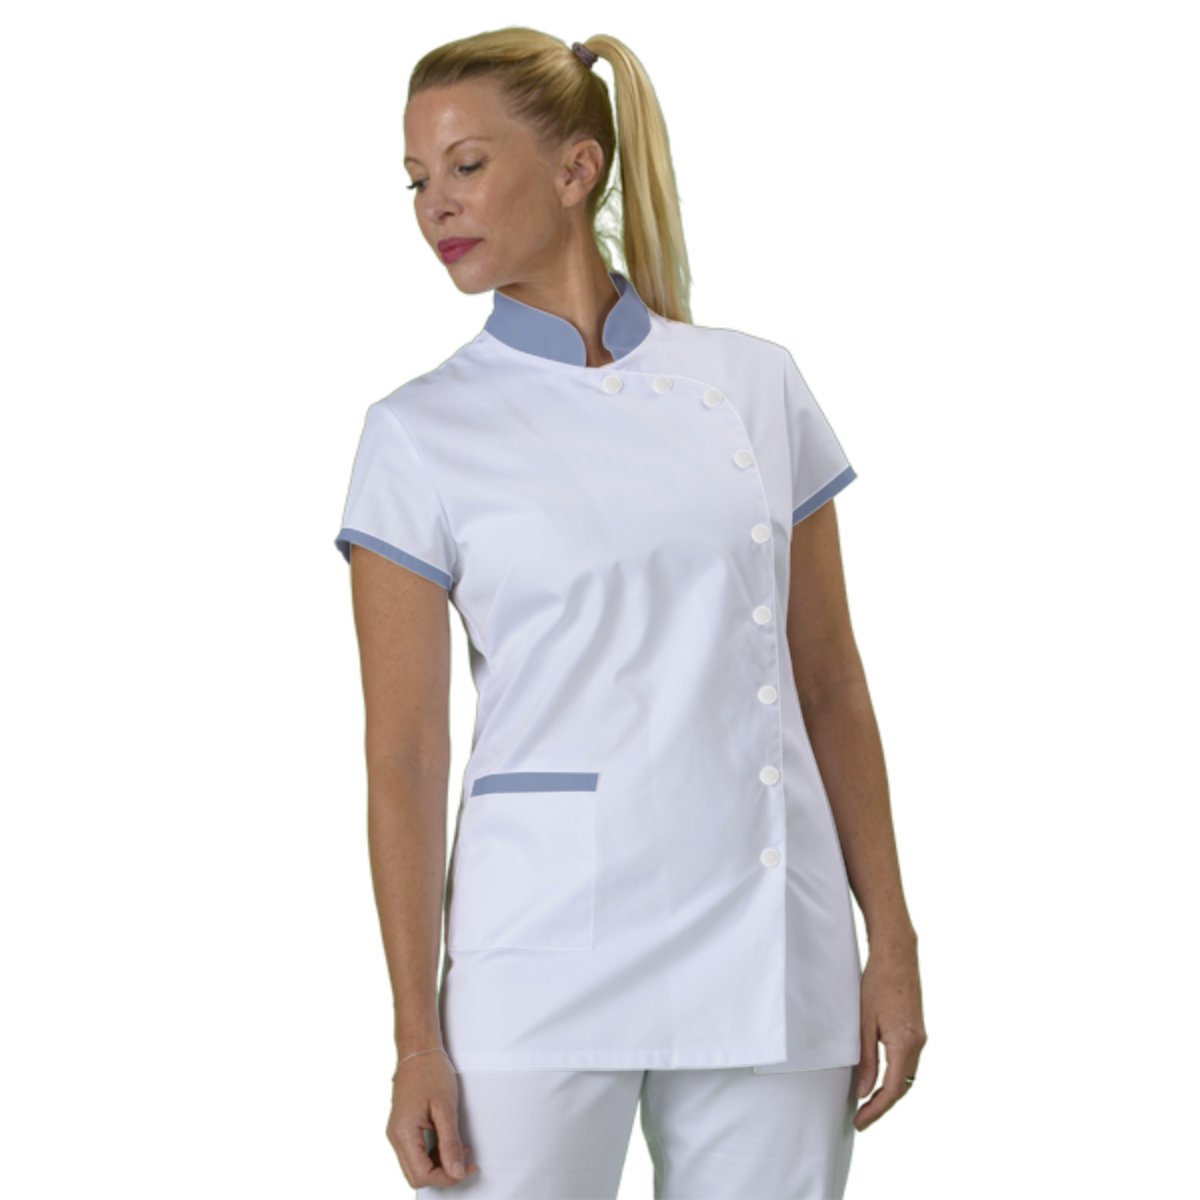 tunique-medicale-infirmiere-personnalisee-col-mao acheté - par Katia - le 05-07-2018